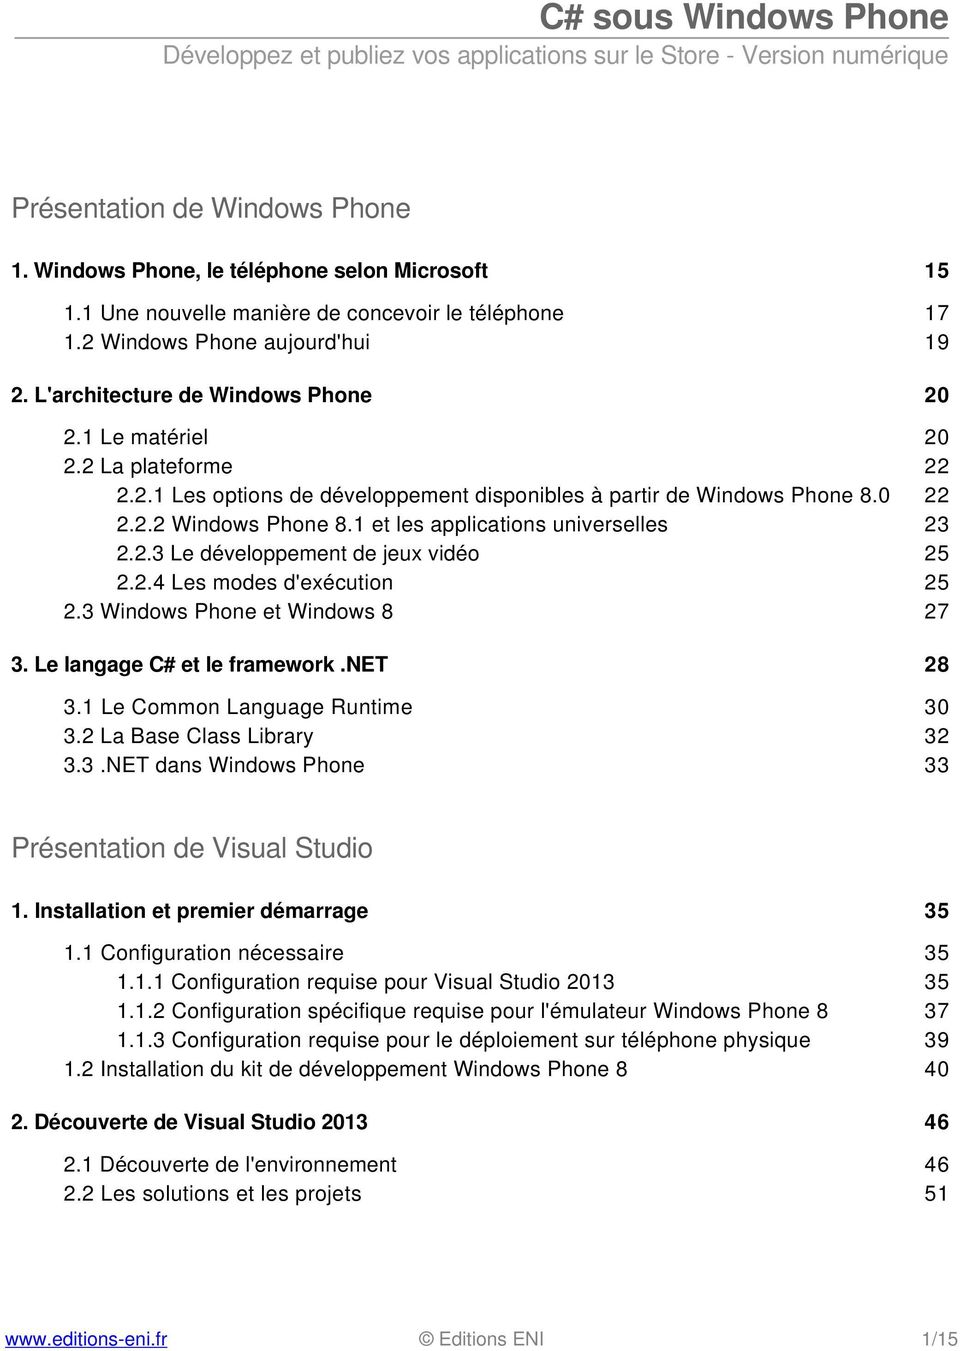 1 et les applications universelles 23 2.2.3 Le développement de jeux vidéo 25 2.2.4 Les modes d'exécution 25 2.3 Windows Phone et Windows 8 27 3. Le langage C# et le framework.net 28 3.